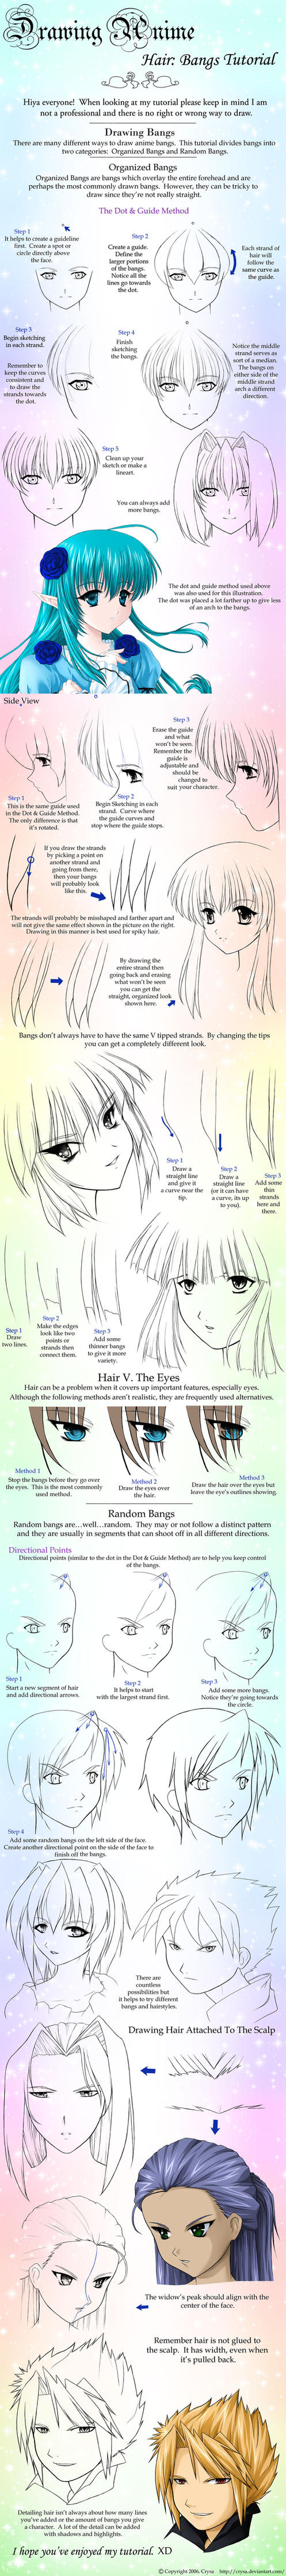 Drawing Anime Hair: Bangs